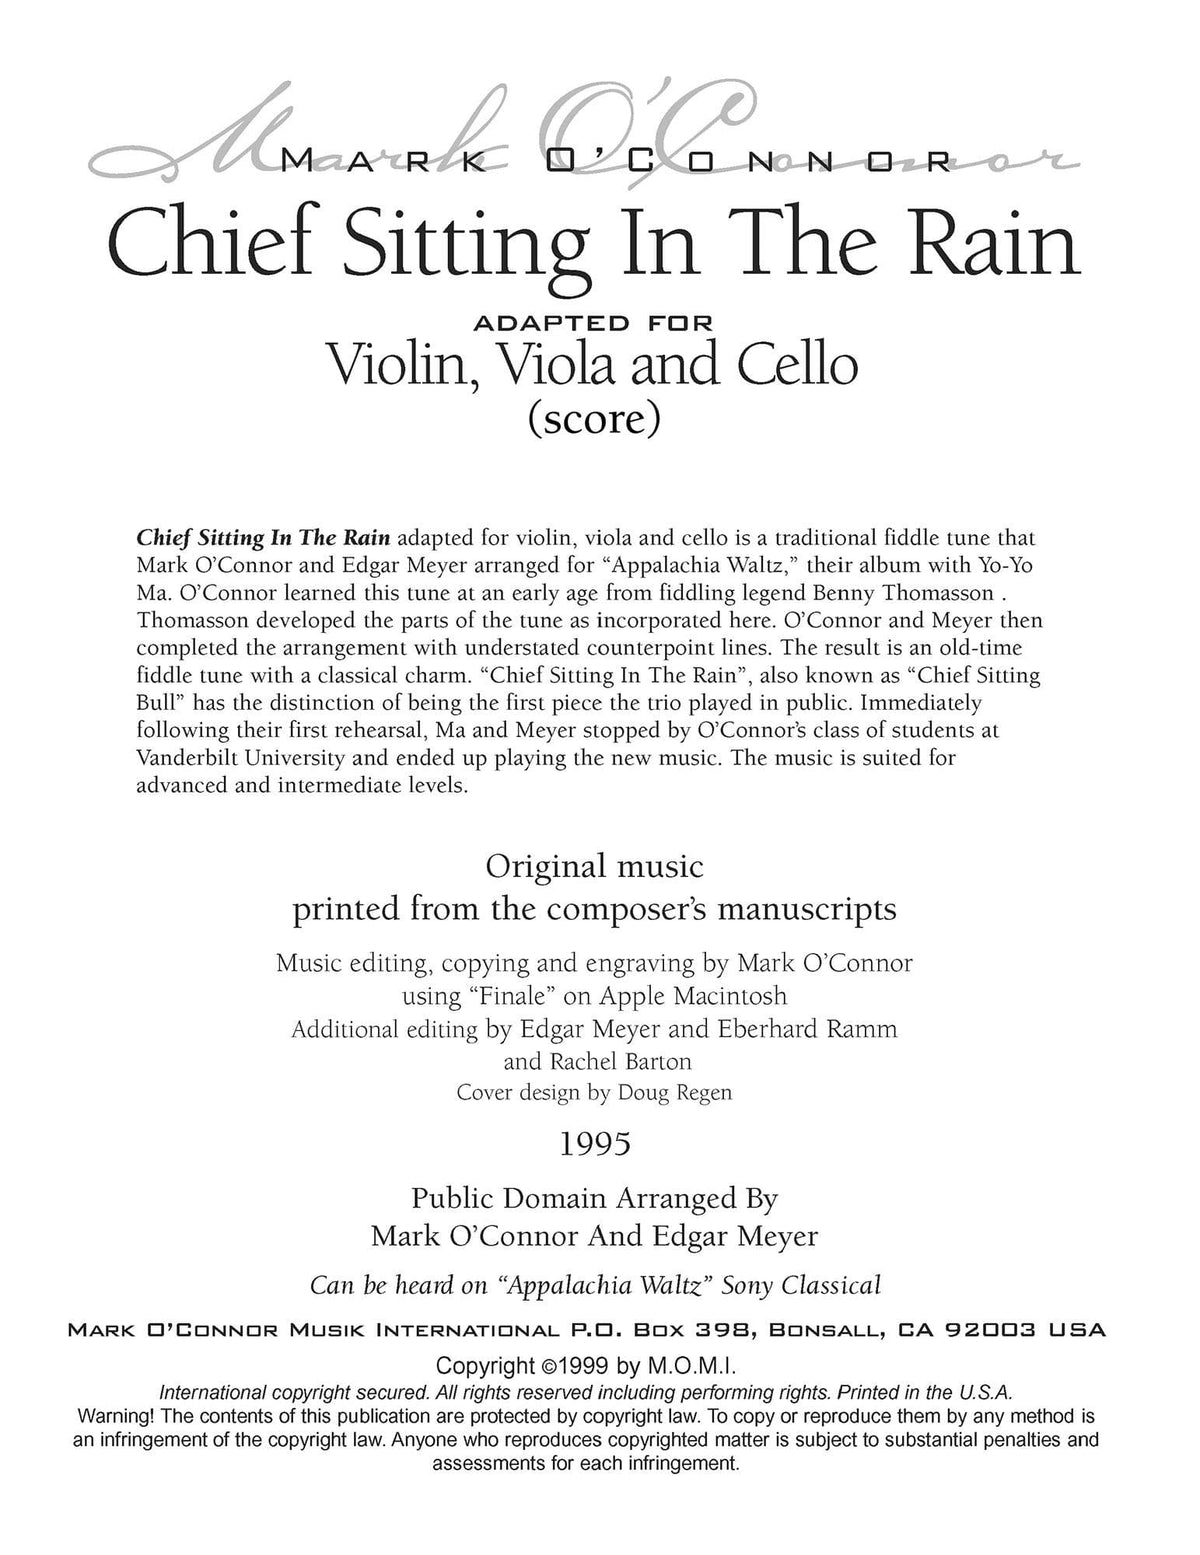 O'Connor, Mark - Chief Sitting In The Rain for Violin, Viola, and Cello - Score - Digital Download